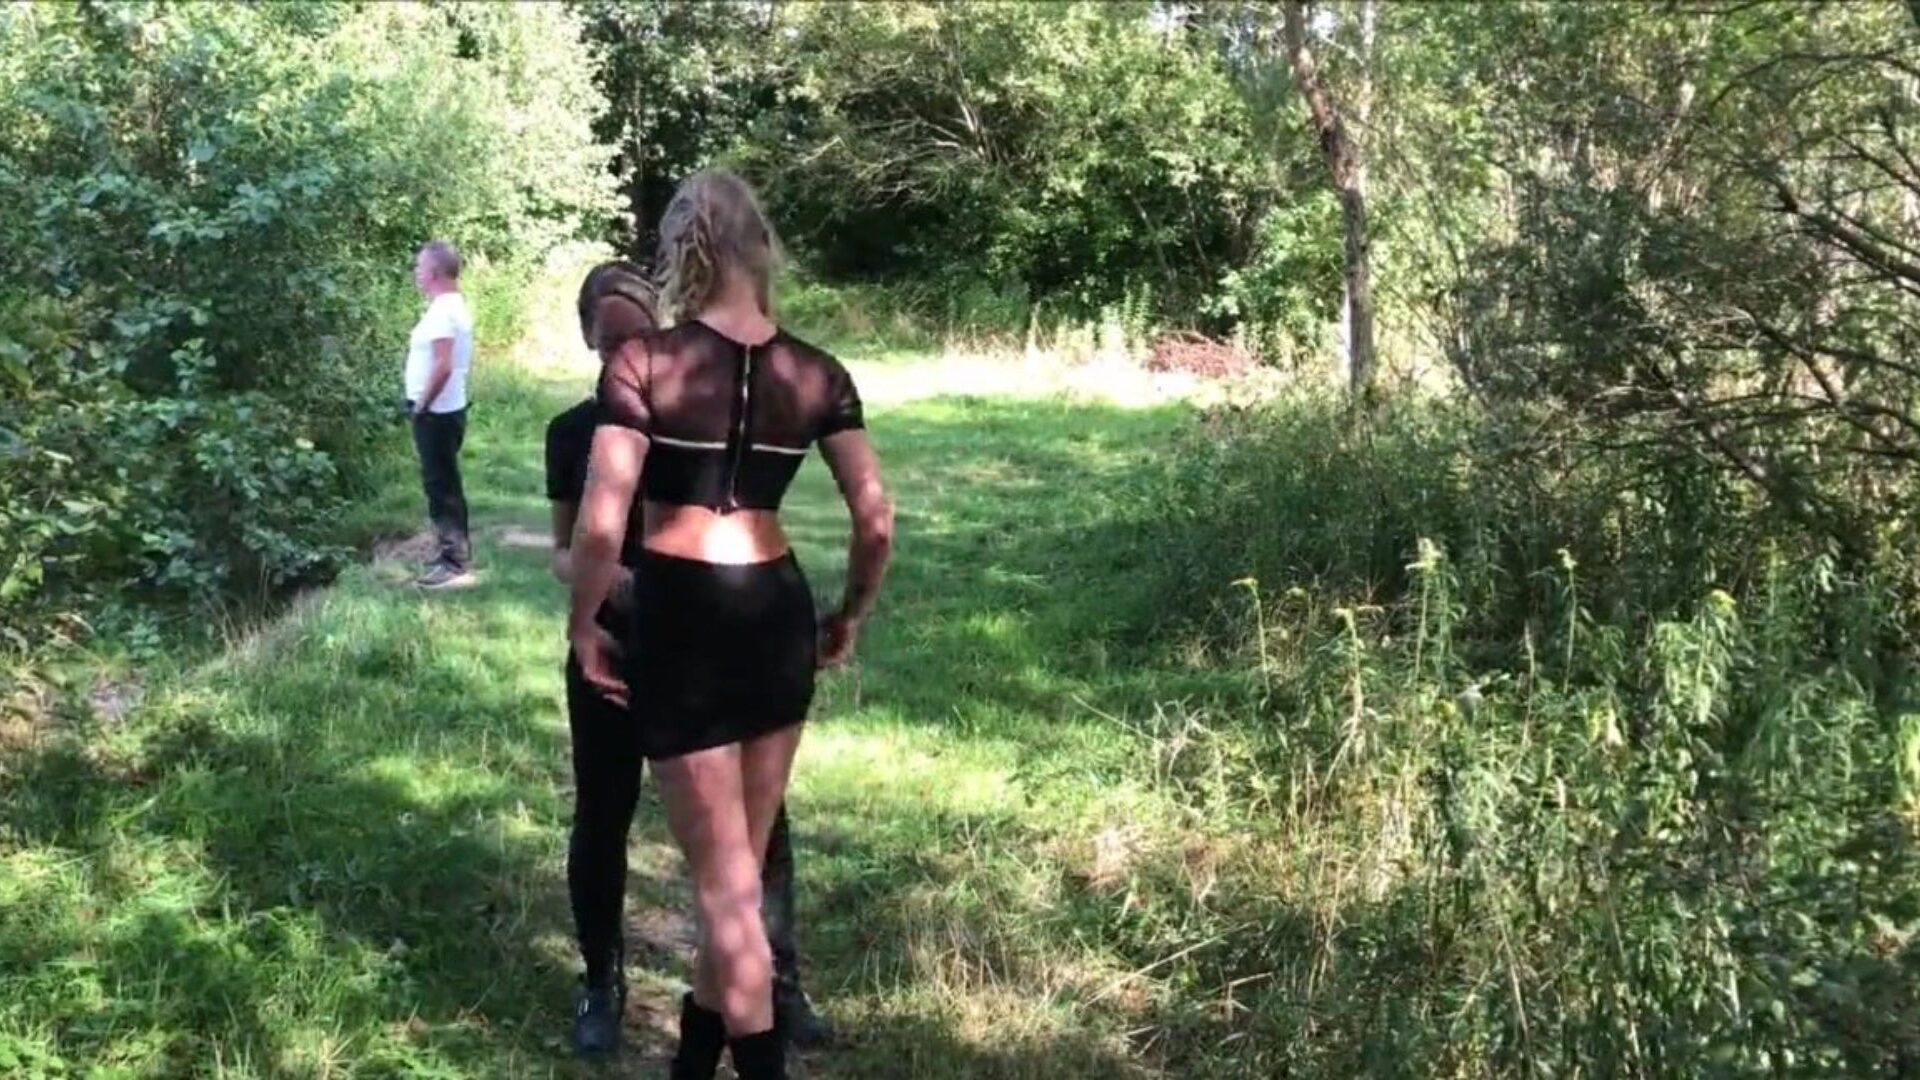 julkiset lesbot: ilmainen seksi metsässä HD-video 33 katso julkista lesbojen putkiseksielokuvanäkymää ilmaiseksi kaikille xhamsterilla, suurin kokoelma hollantilaista seksiä metsässä ja blondi HD-pornosarjajaksoja